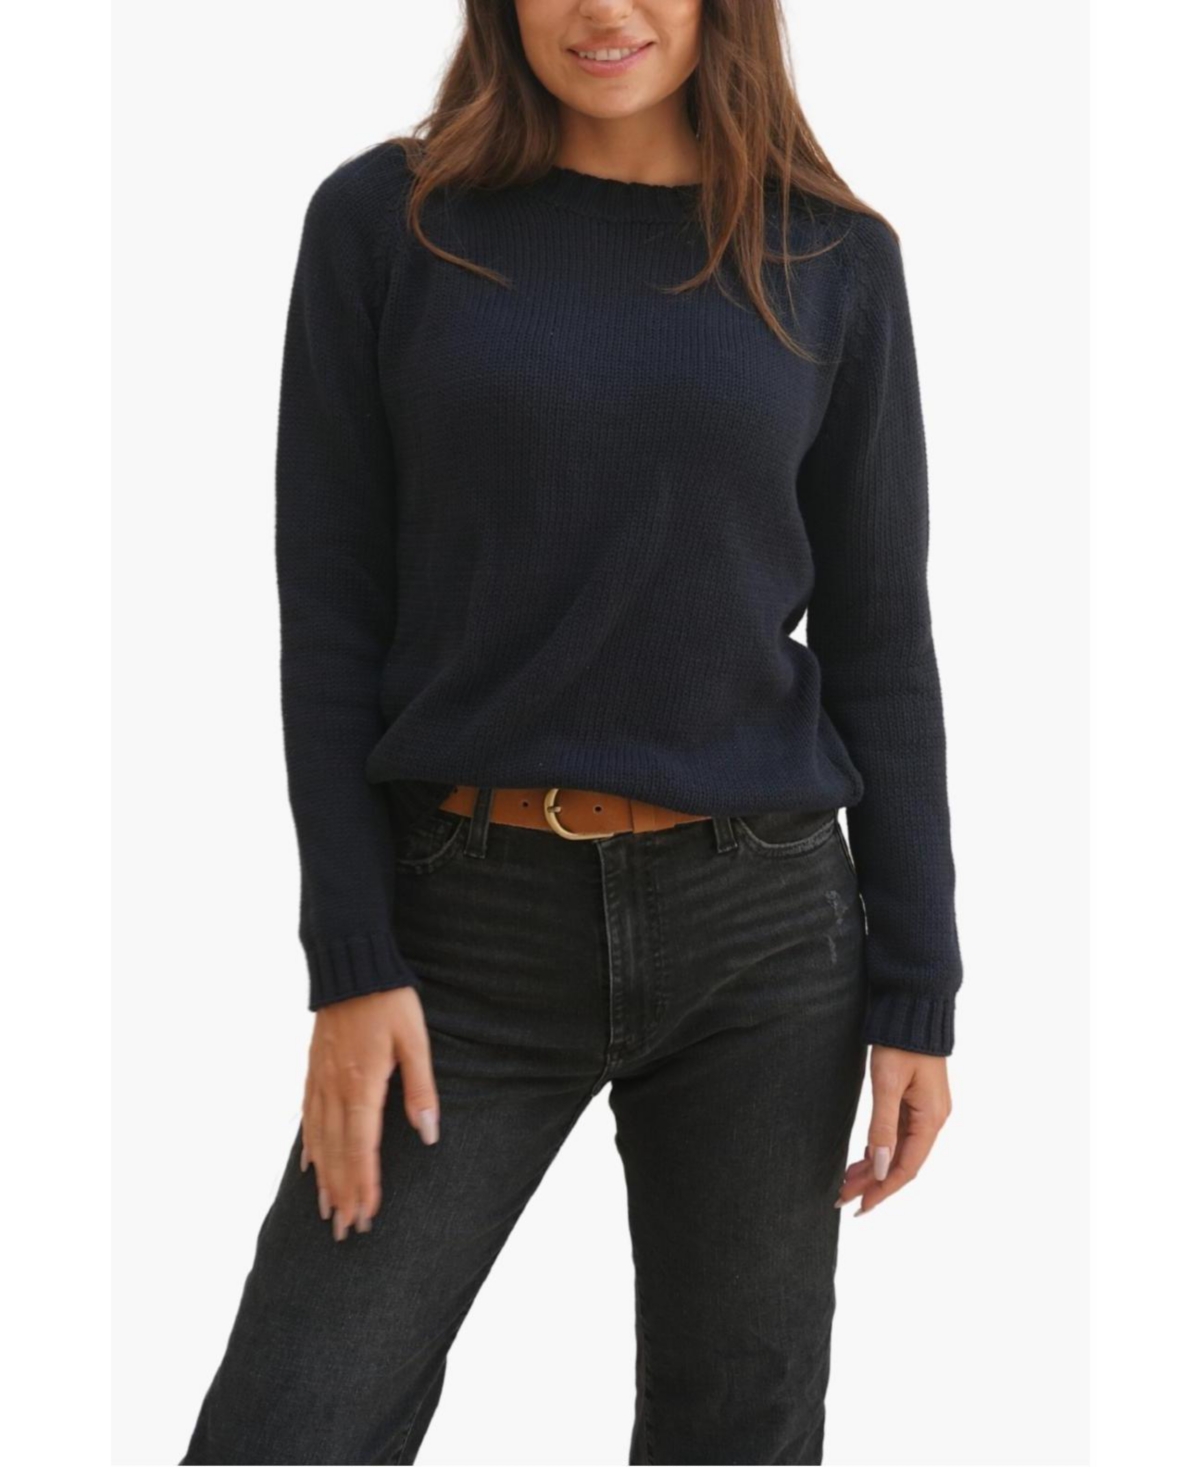 Women's Cotton Sloane Crewneck Pullover Sweater - Off white/ black stripe